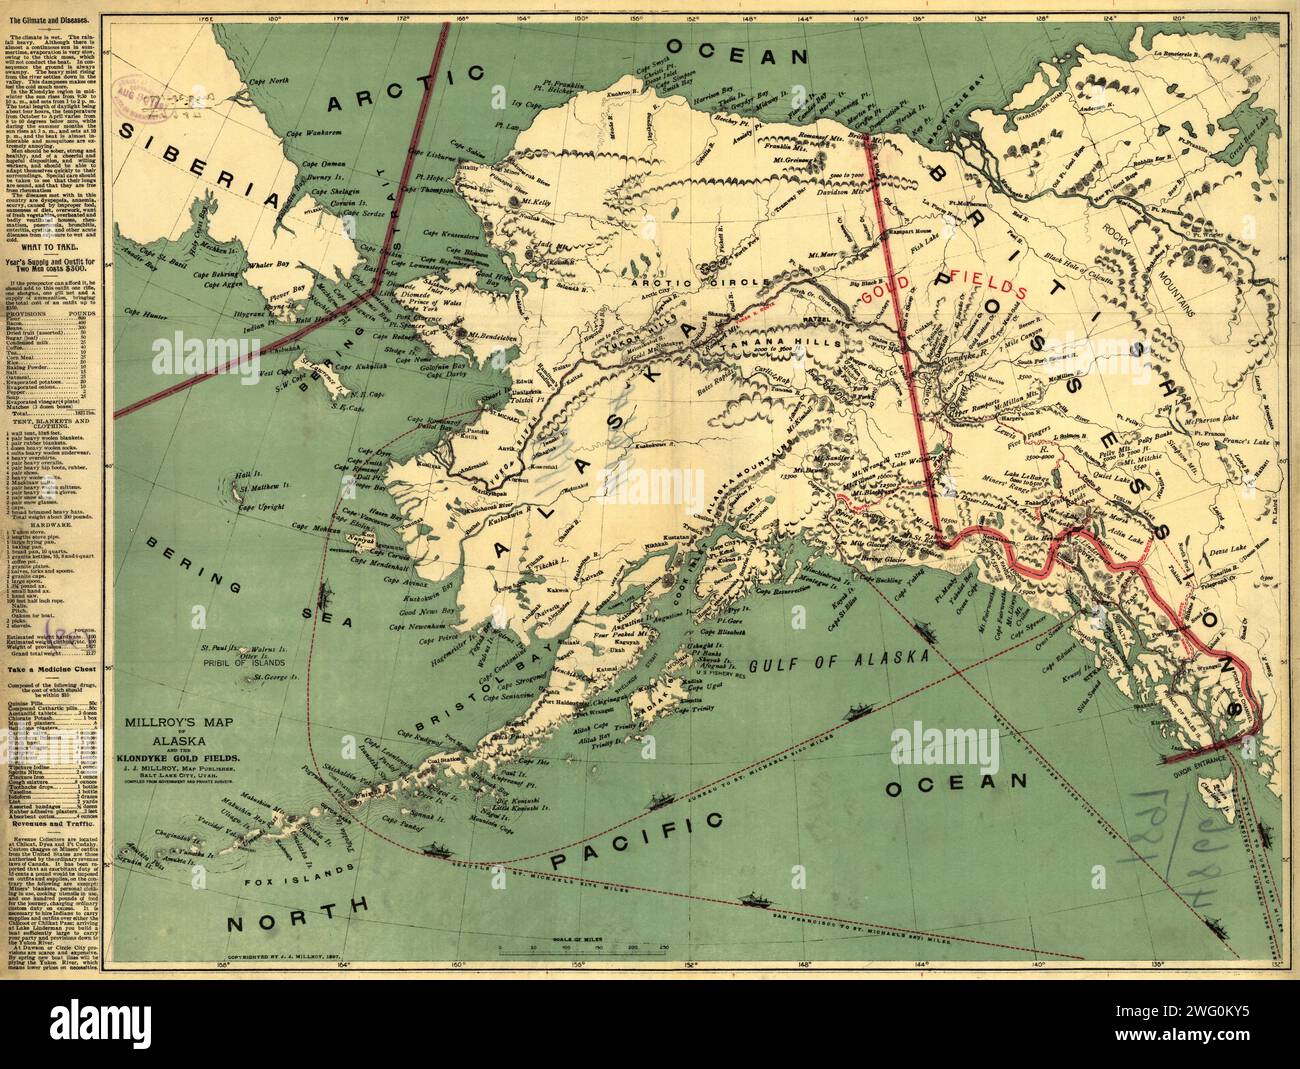 Mappa di Millroy dell'Alaska e dei campi d'oro di Klondyke, 1897. La corsa all'oro di Klondike del 1898 iniziò seriamente entro 18 mesi da un importante sciopero dell'oro sul Bonanza Creek, un affluente del fiume Klondike vicino a Dawson City, Canada. Un cartografo di Salt Lake City, J.J. Millroy, ha creato questa guida ai giacimenti d'oro di Klondike nel 1897 utilizzando indagini governative e private. La mappa era destinata all'uso da parte dei molti potenziali minatori che presto sarebbero scesi sullo Yukon da tutto il mondo. La mappa mostra i principali percorsi per i campi d'oro di Klondike (in rosso), tra cui il Chilkoot, Chilkat e il Copper Riv Foto Stock